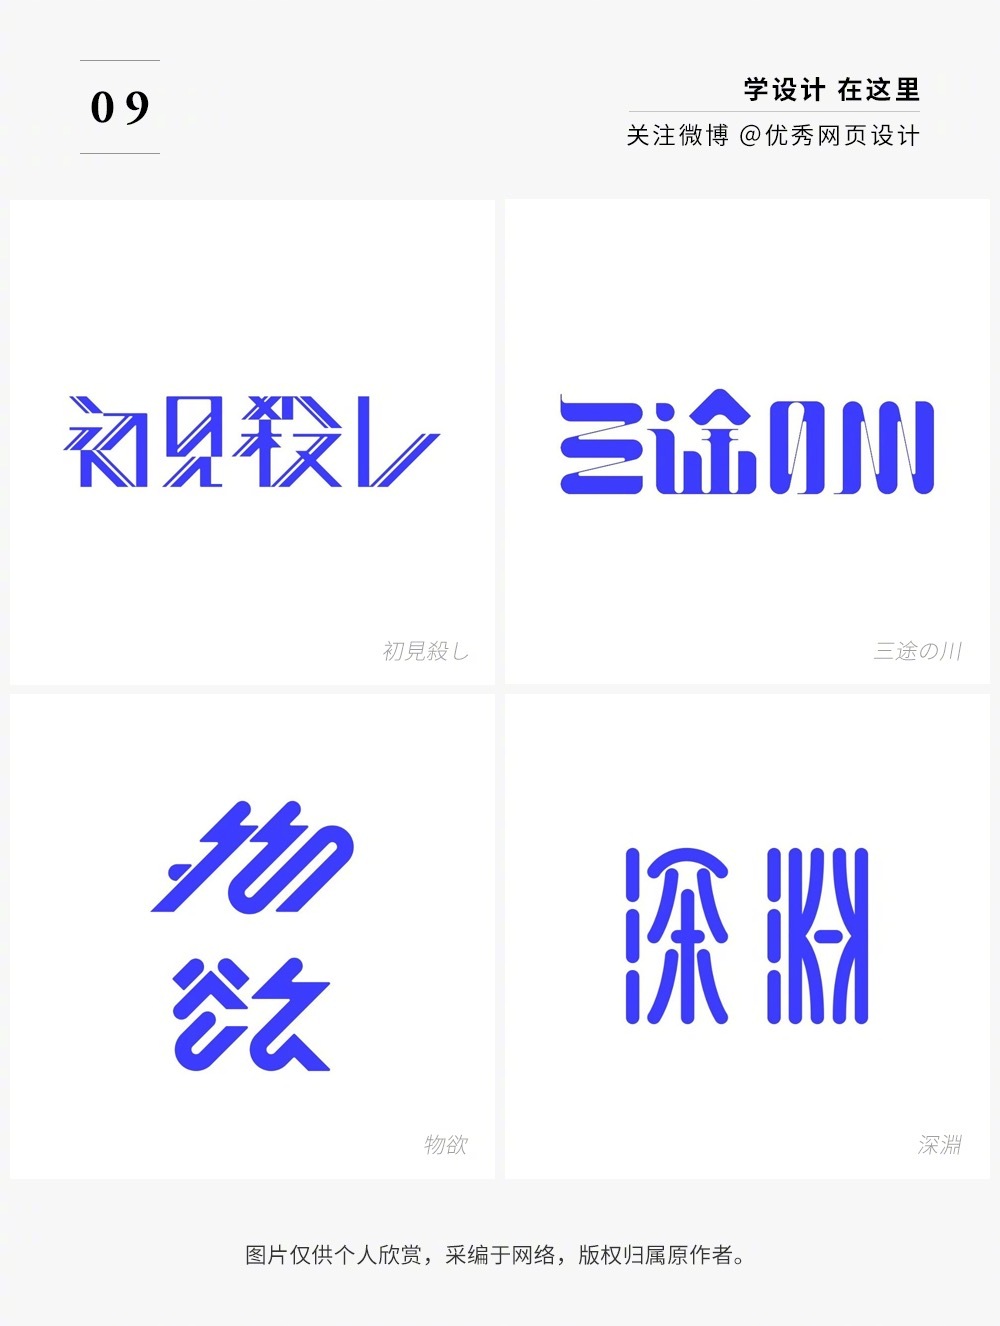 72幅日本设计师的字体打卡作品